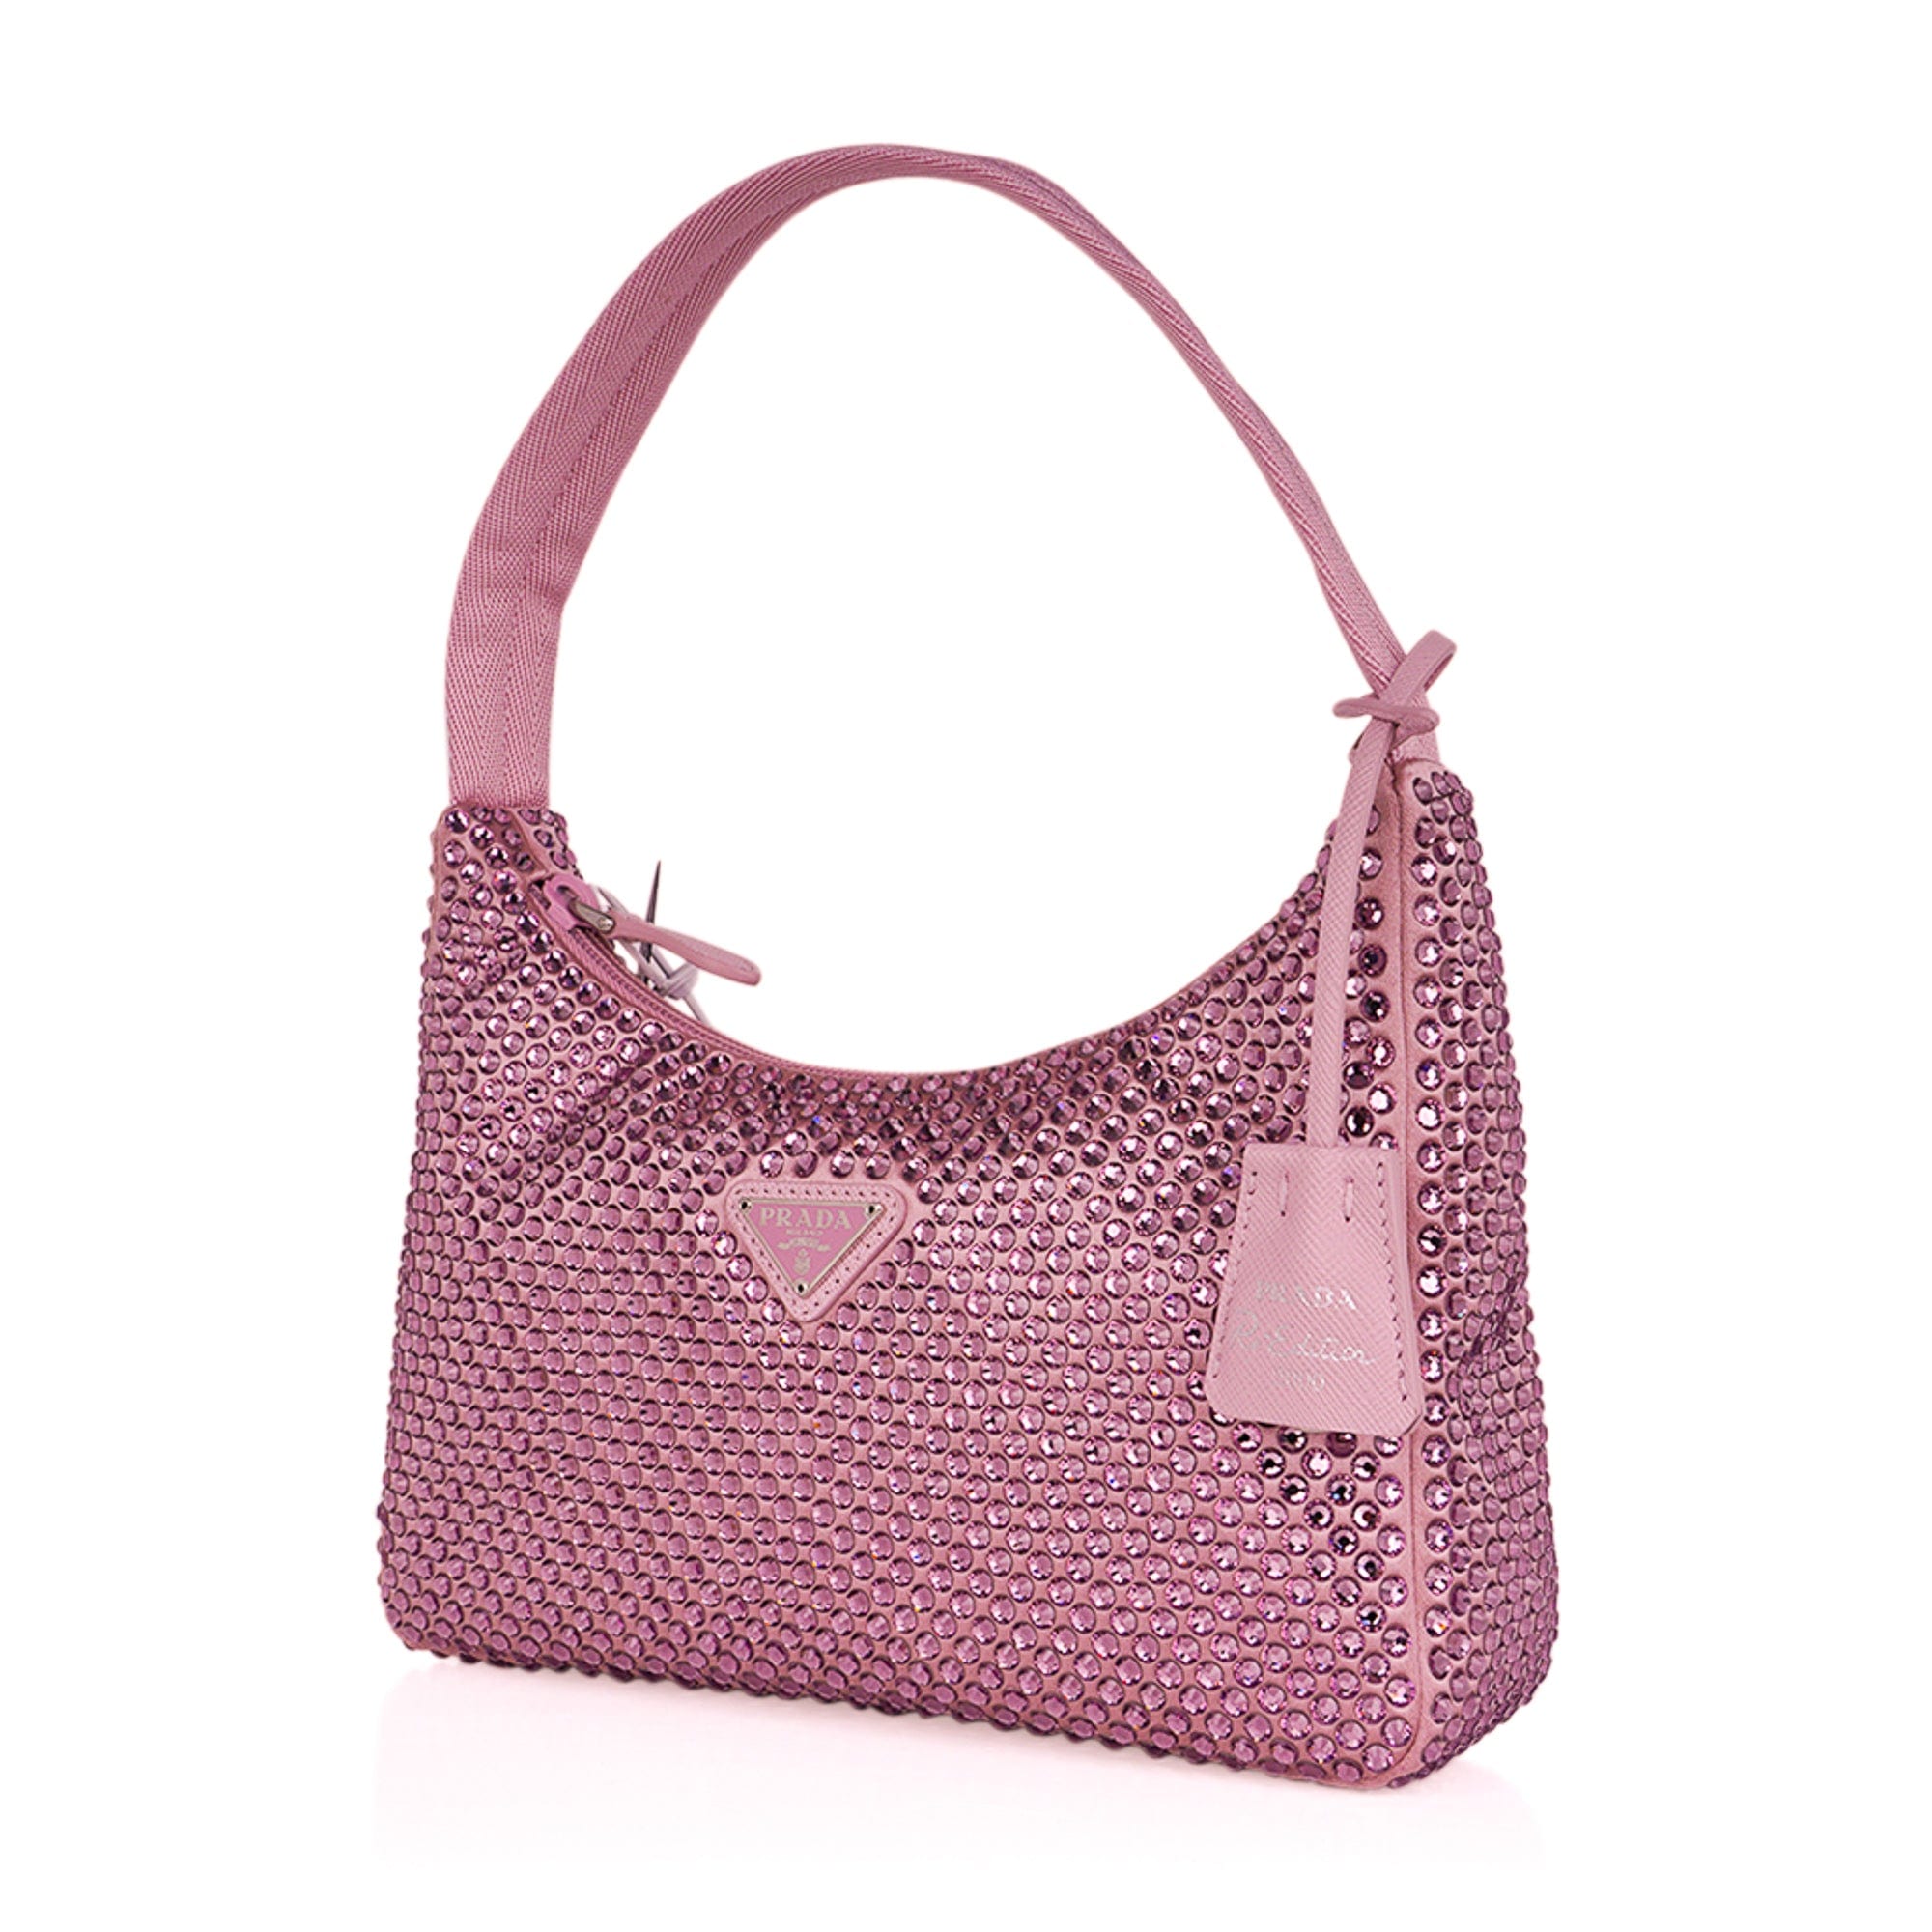 Prada: Pink Mini Re-Edition Bag